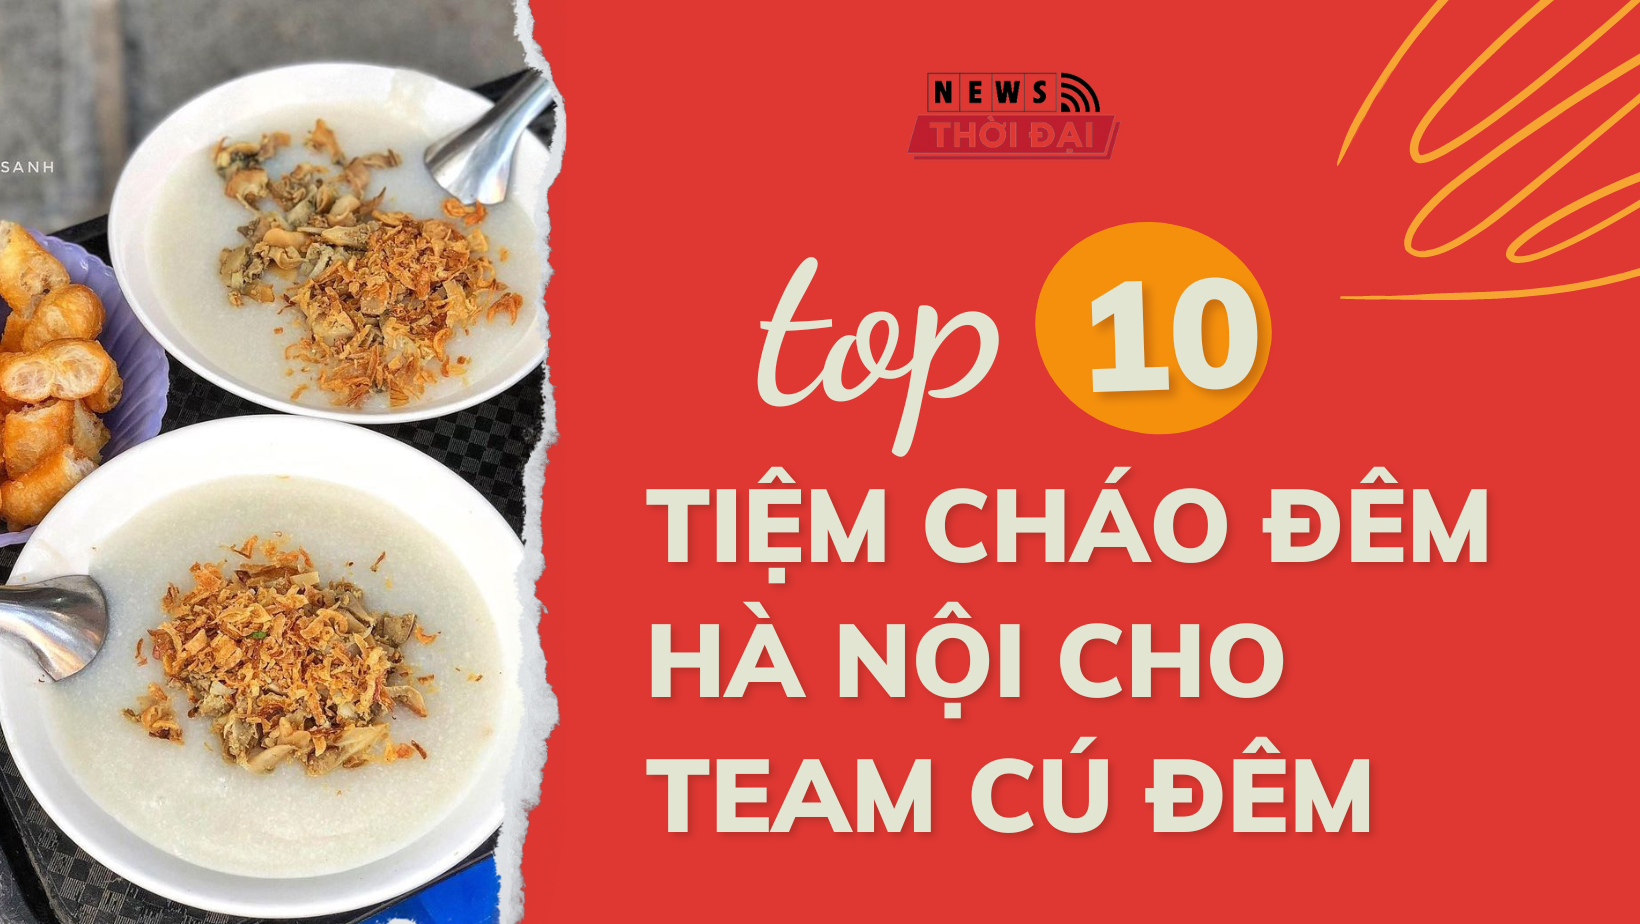 TOP 10 tiệm cháo đêm Hà Nội cho team cú đêm